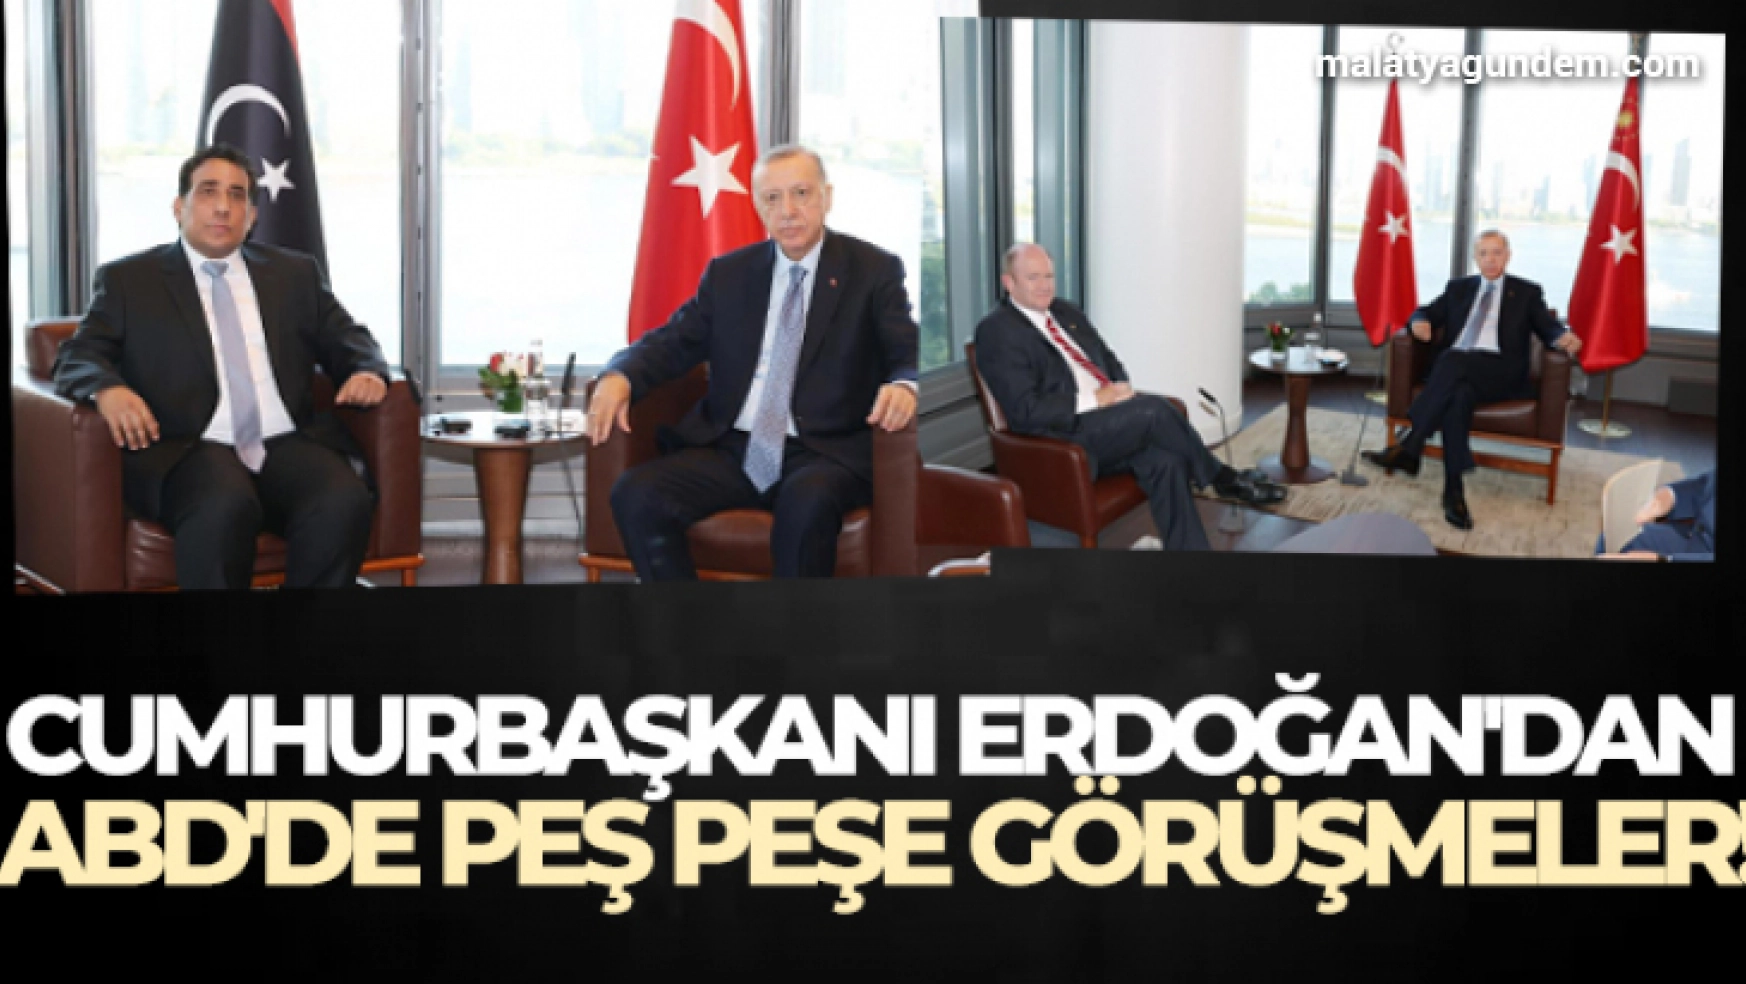 Cumhurbaşkanı Erdoğan'dan ABD'de peş peşe görüşmeler!